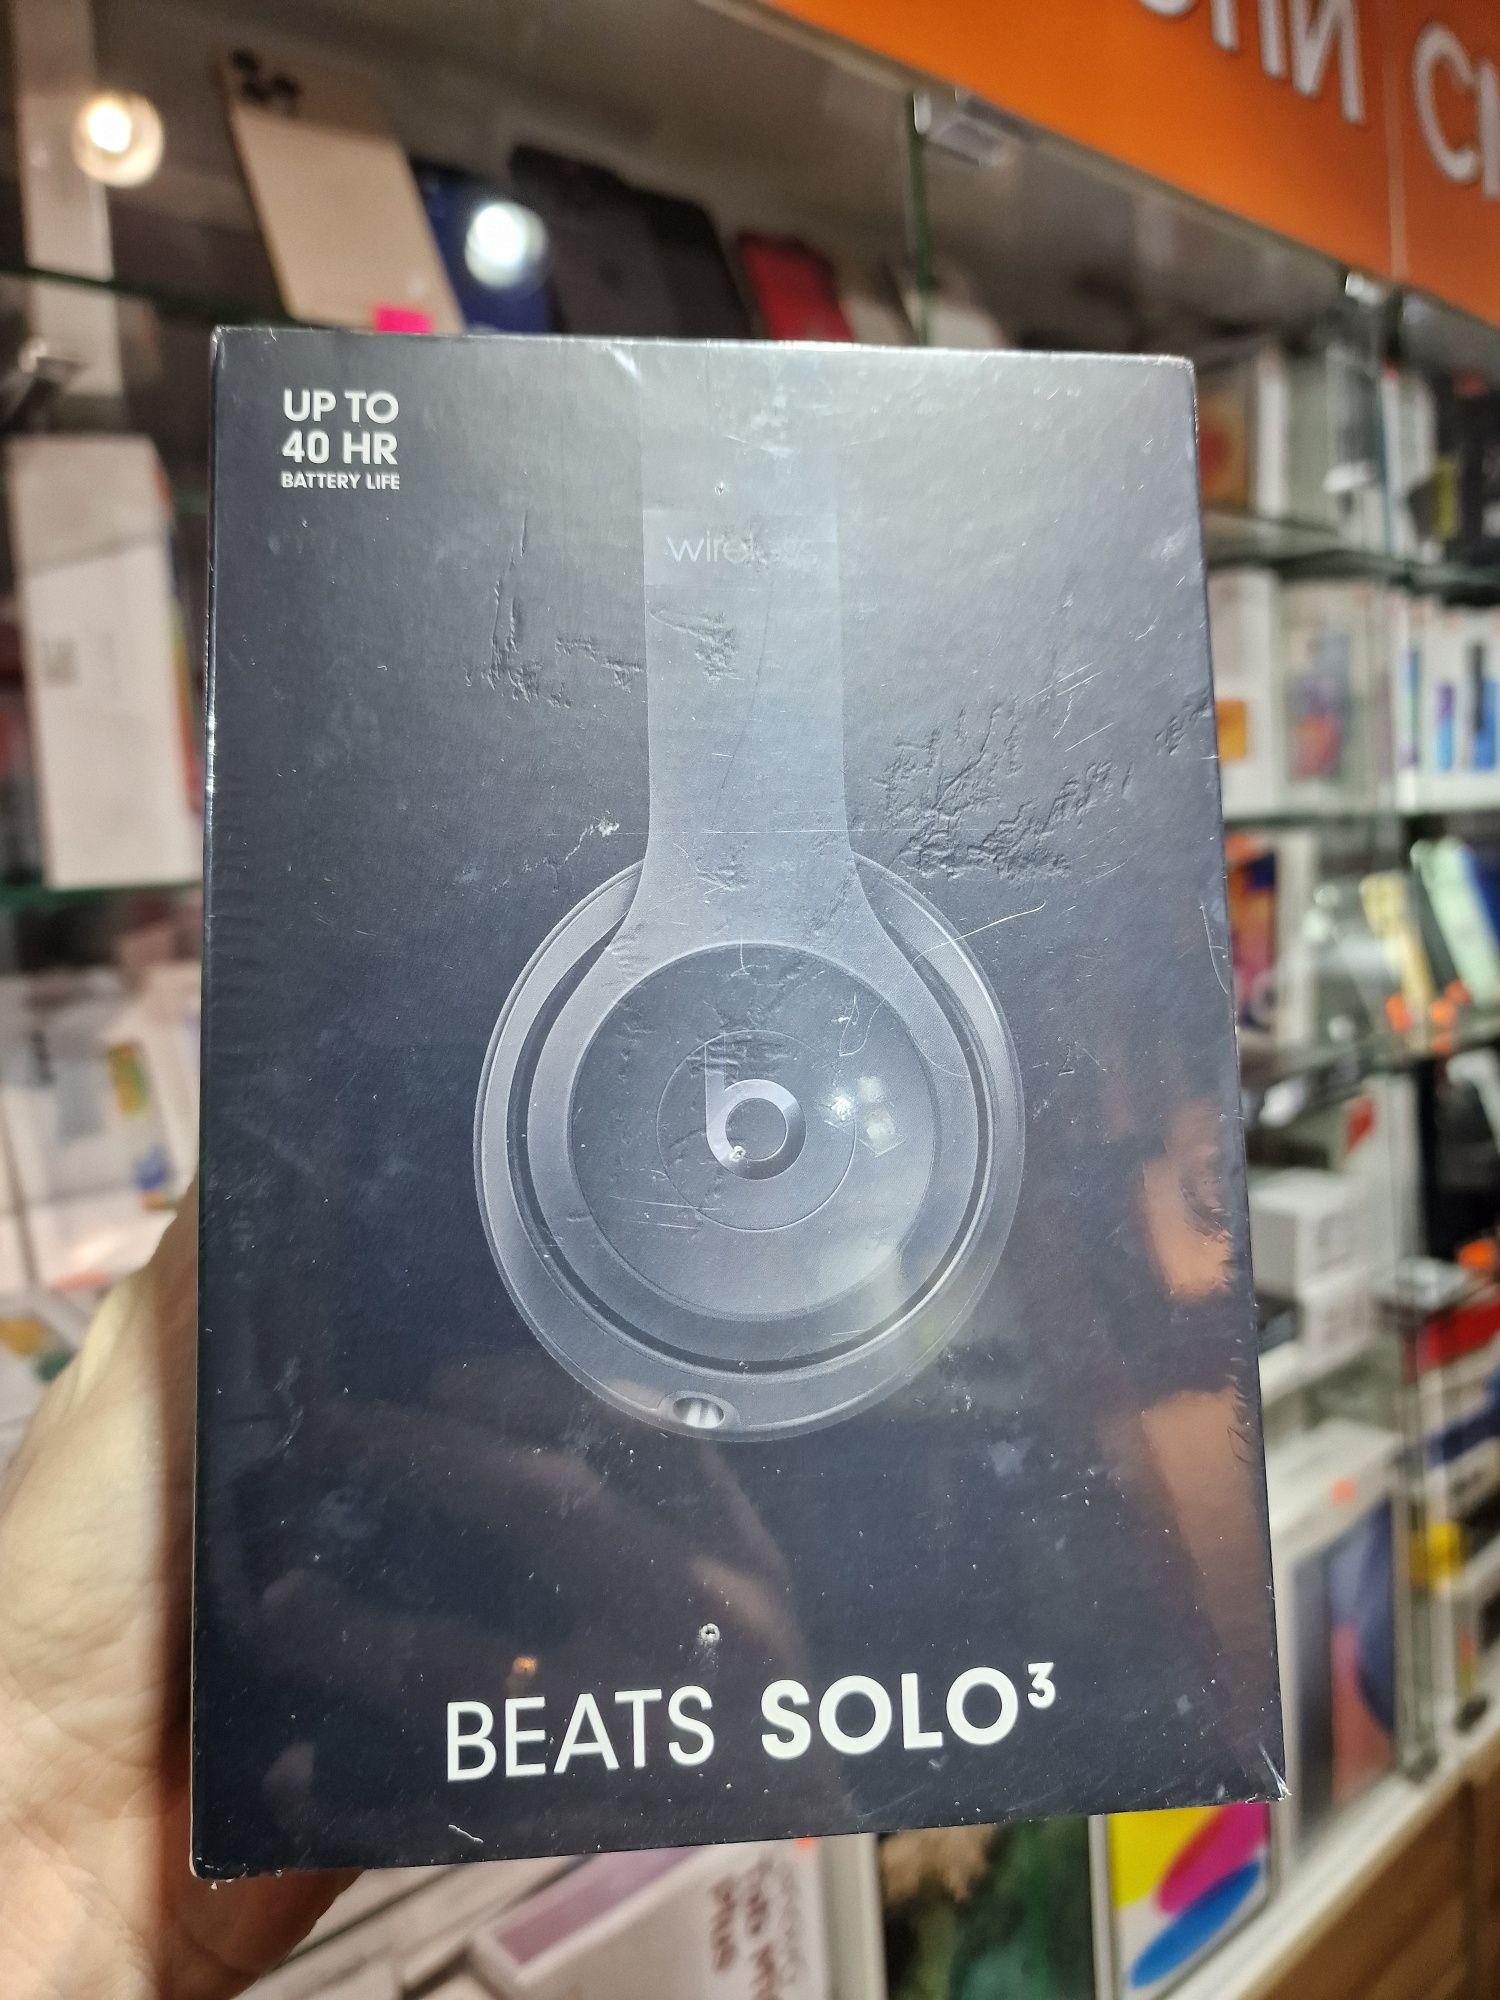 Наушники Beats Solo3 Wireless Headphones - The Beats Icon Collection